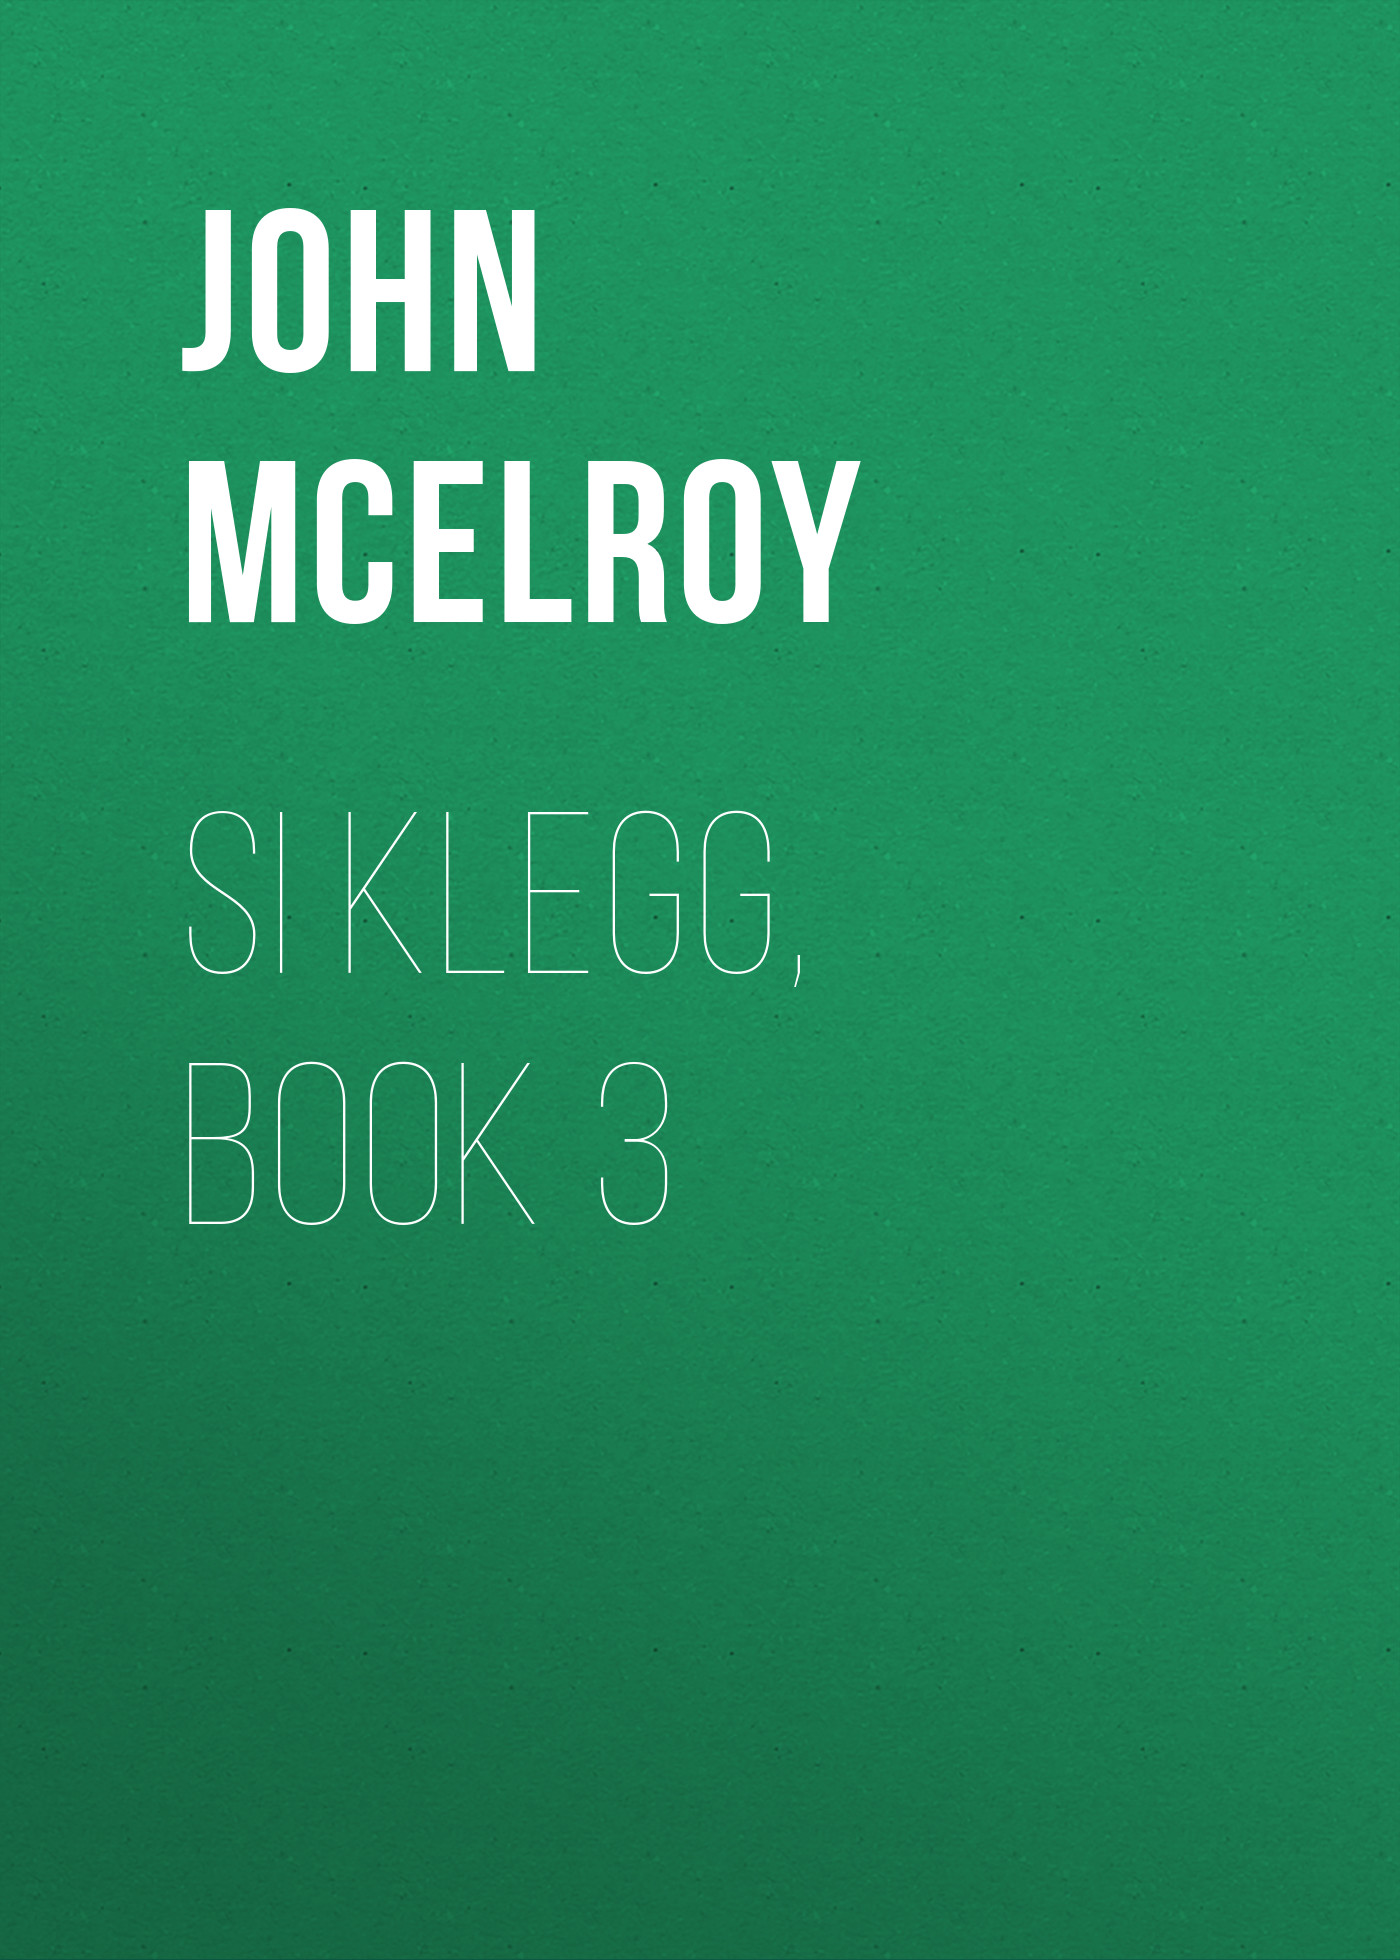 Книга Si Klegg, Book 3 из серии , созданная John McElroy, может относится к жанру Зарубежная классика, История, Зарубежная образовательная литература, Зарубежная старинная литература. Стоимость электронной книги Si Klegg, Book 3 с идентификатором 36324268 составляет 0 руб.